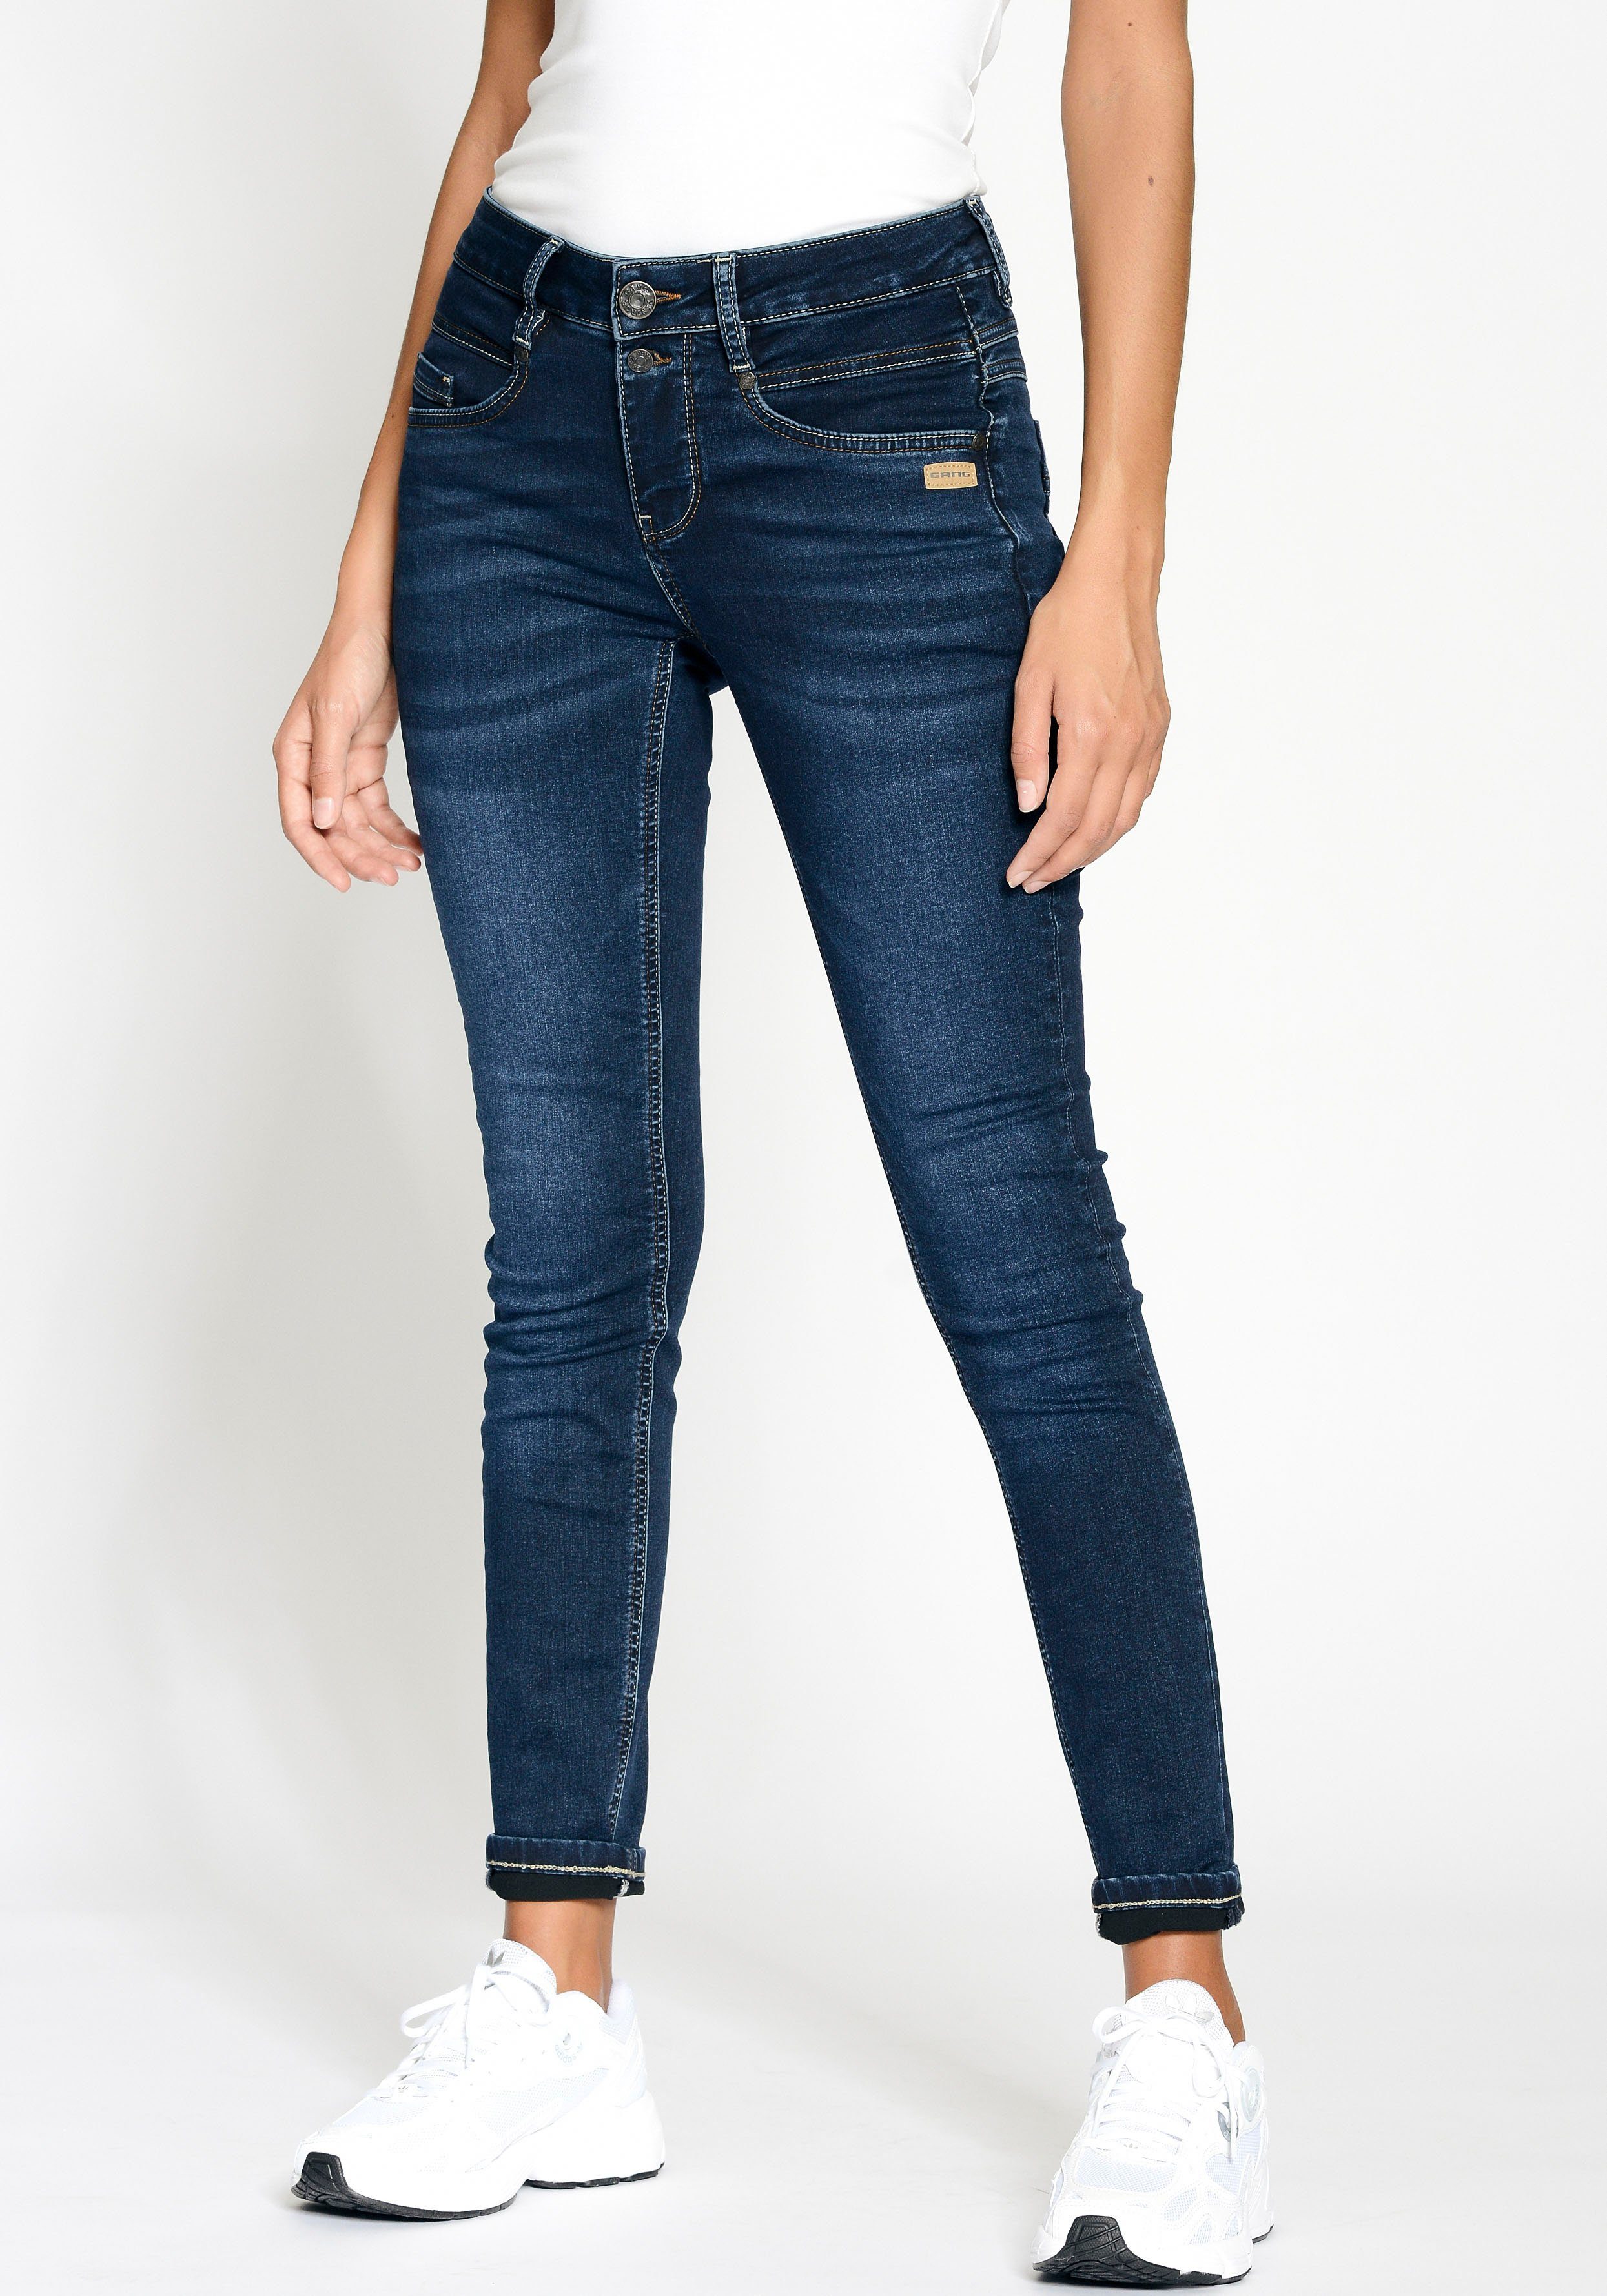 GANG Skinny-fit-Jeans 94MORA mit vorne blue und Passe deep dark 3-Knopf-Verschluss